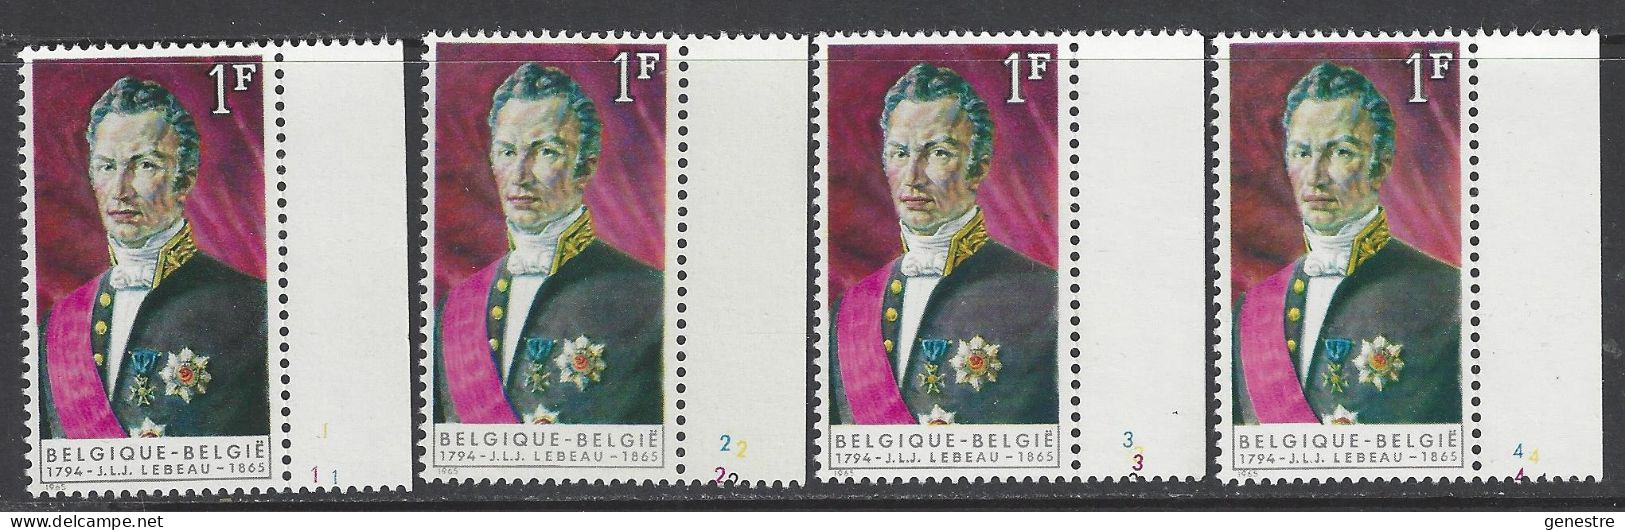 Belgique - 1965 - COB 1351 ** (MNH) - Planches 1 à 4, Série Complète - 1961-1970